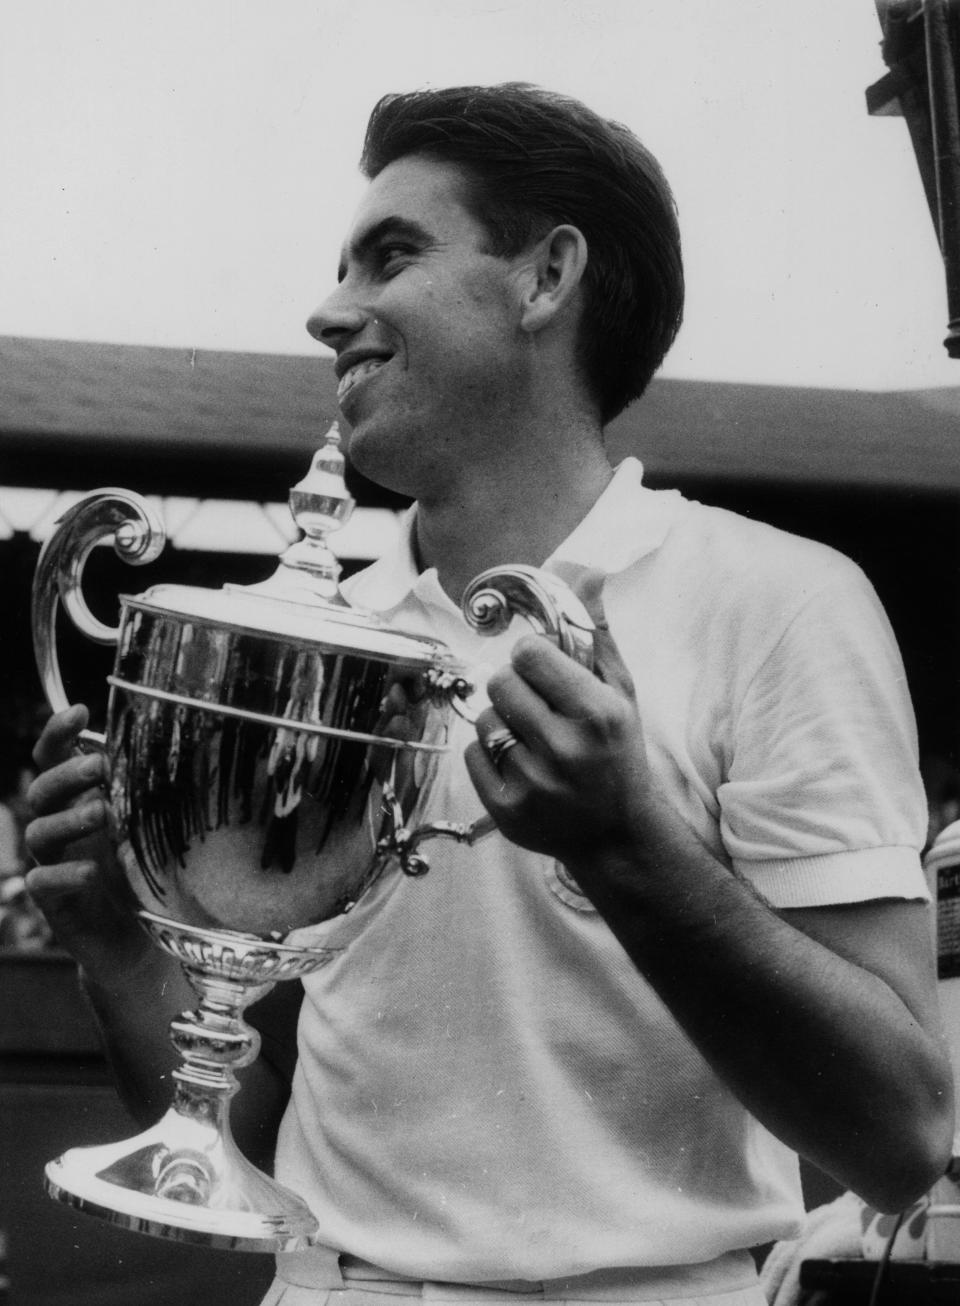 Manolo Santana, el primer español en ganar Wimbledon, levanta la copa con la piña en 1966. (Foto: Leonard Burt / Central Press / Getty Images).